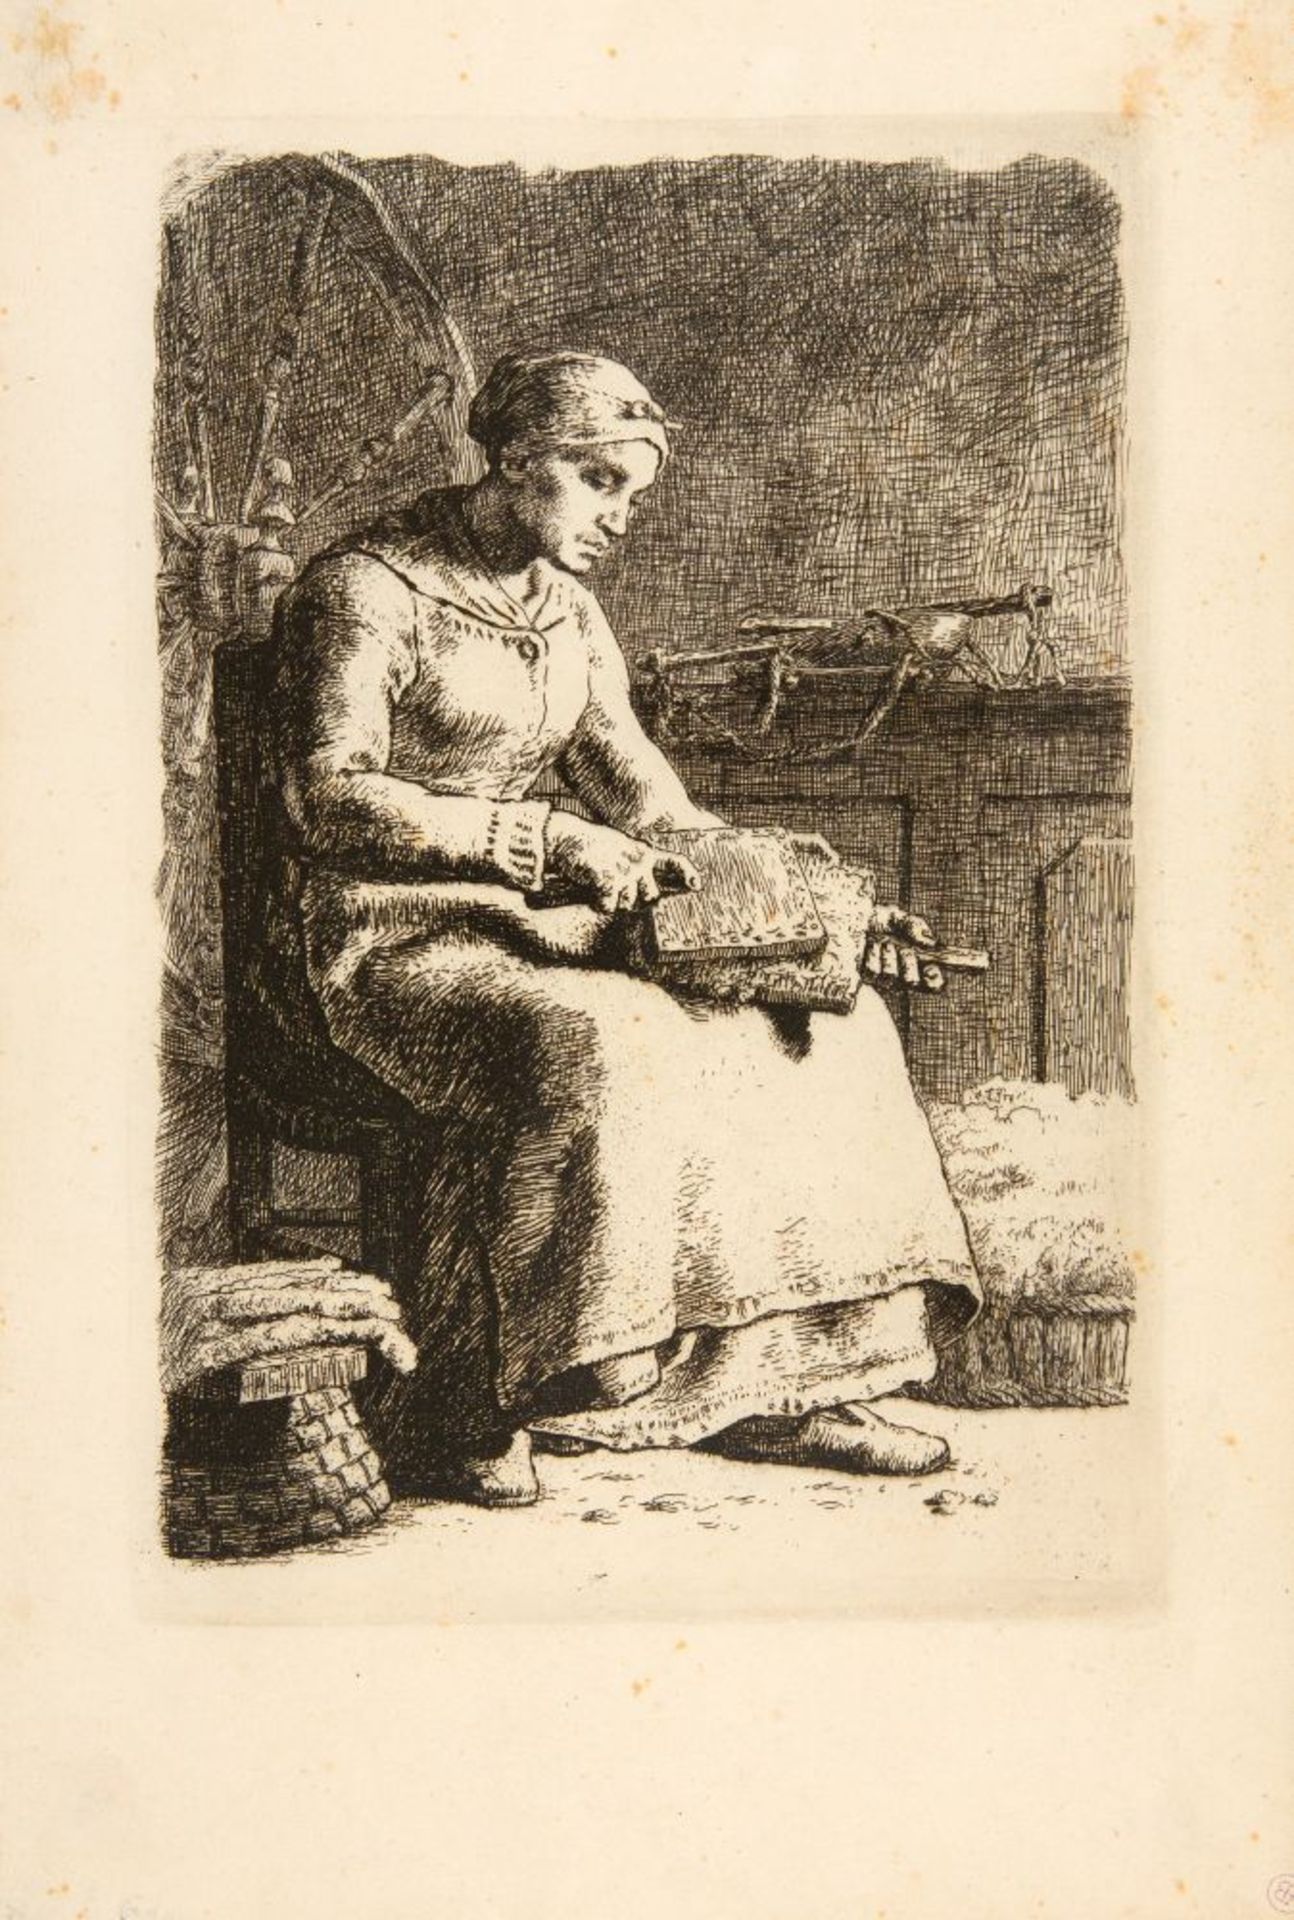 Jean François Millet. La Cardeuse. 1855/56. Radierung. D. 15.